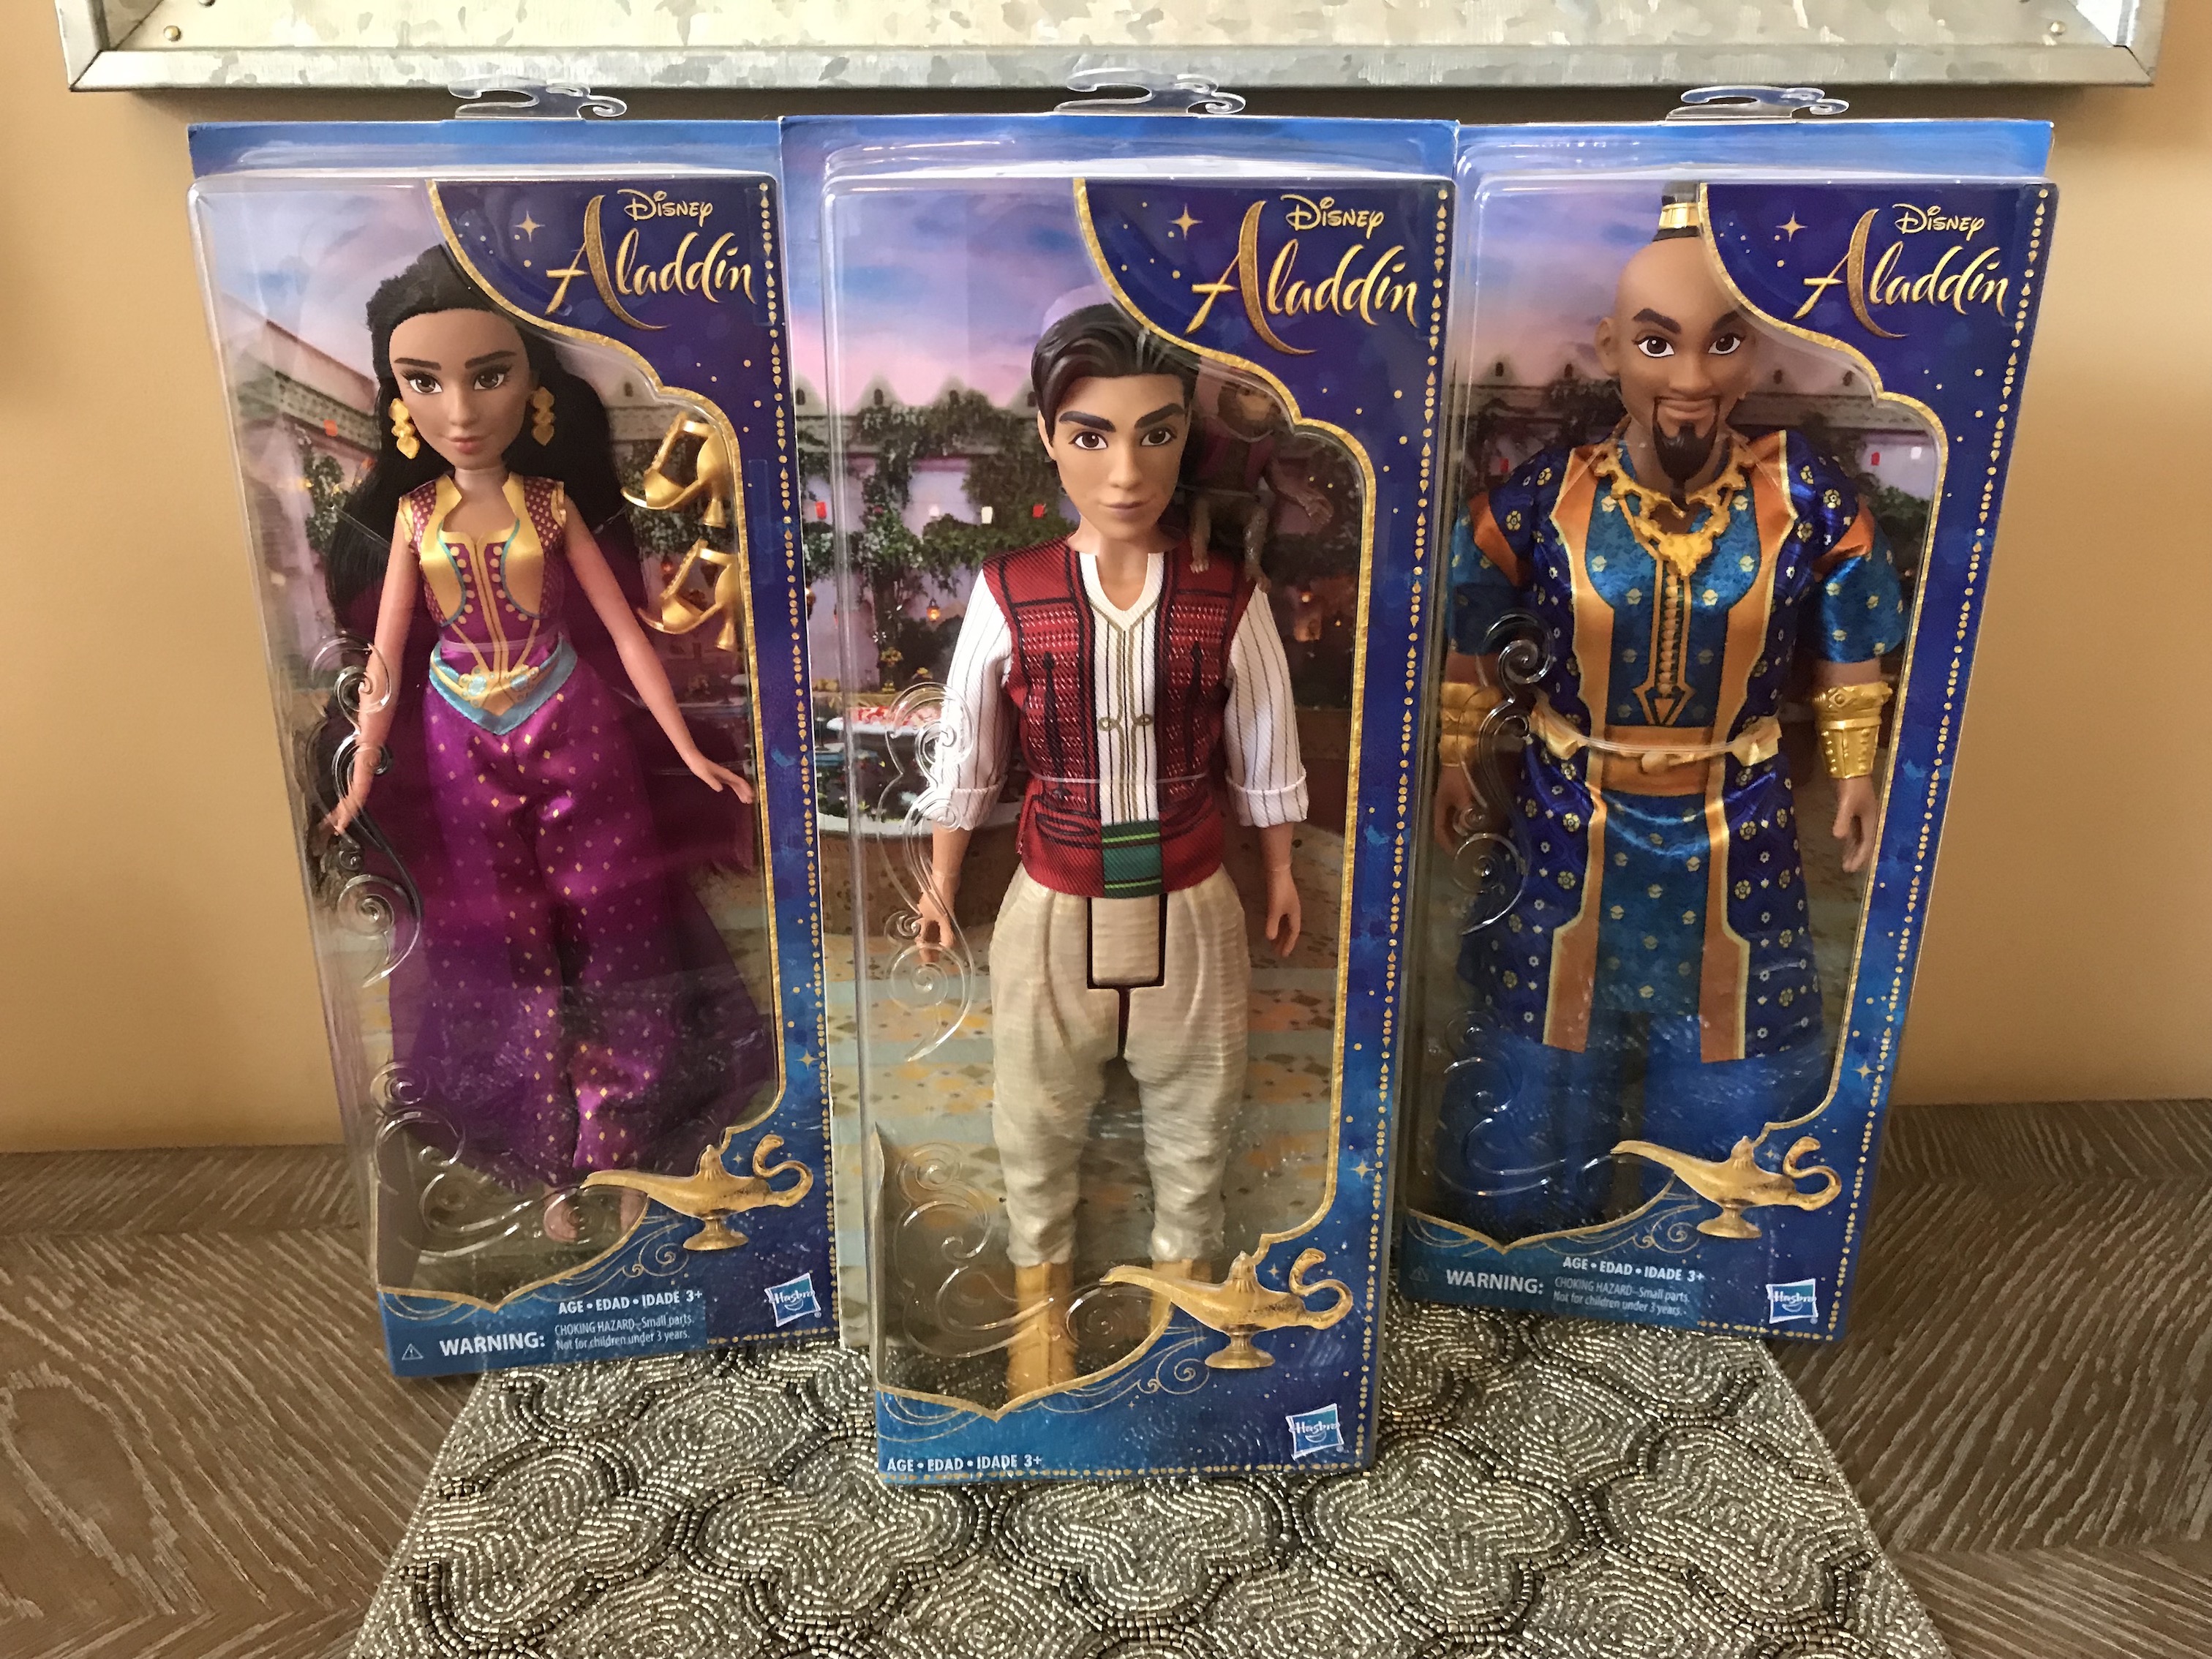 Disney Aladdin Dolls from Hasbro